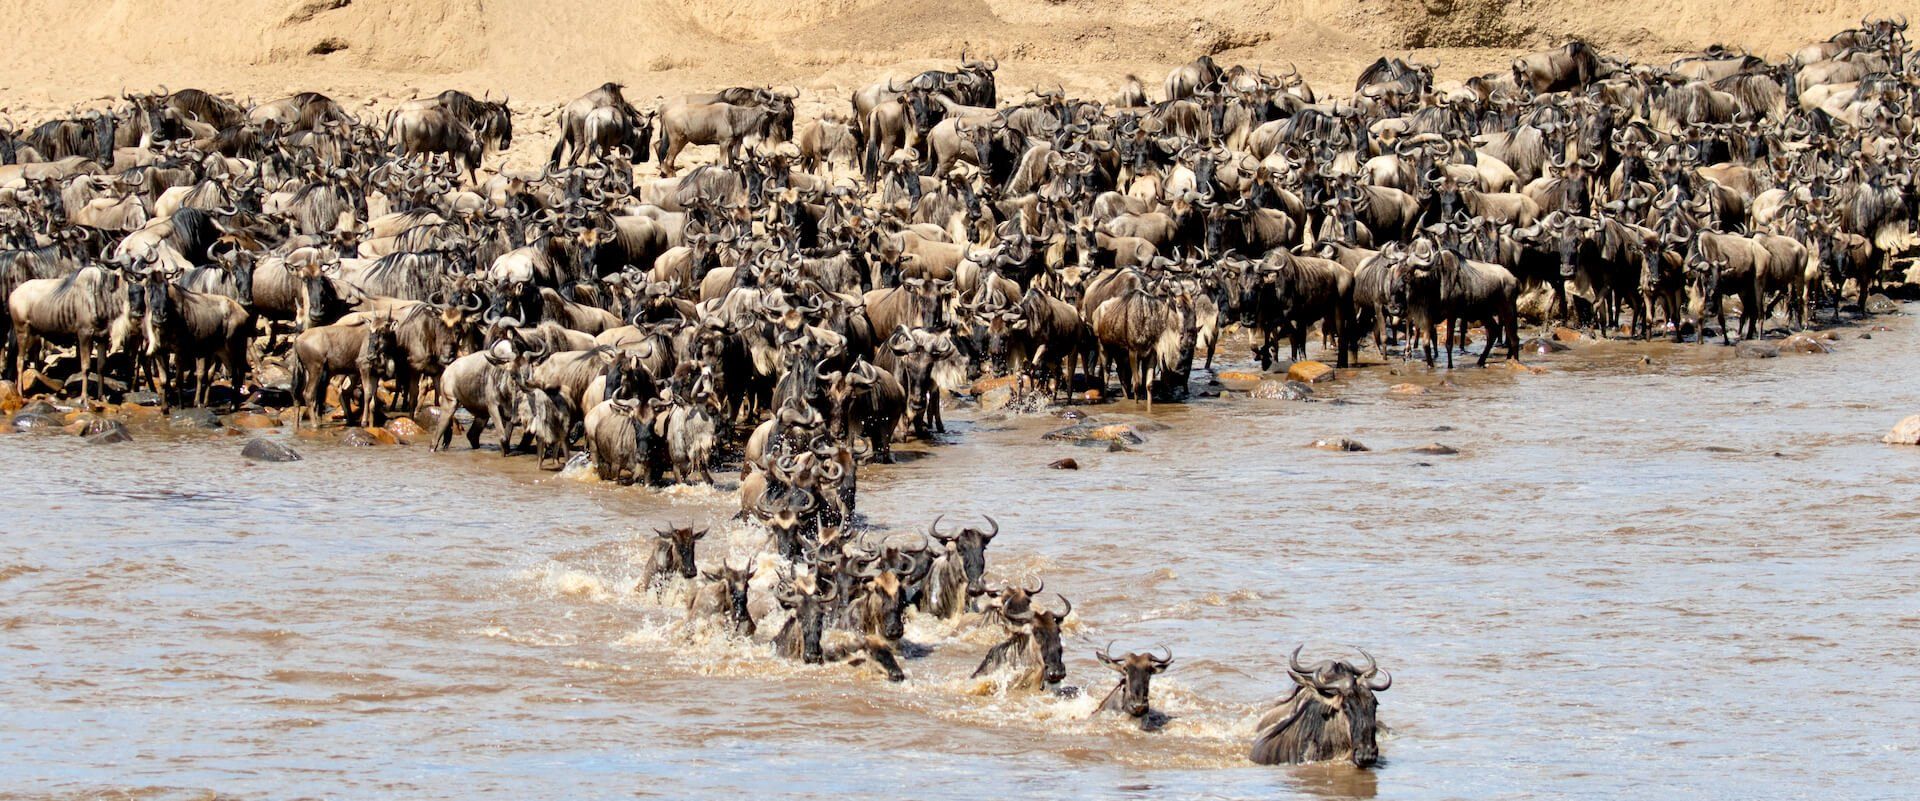 Wildebeest Migration of East Africa